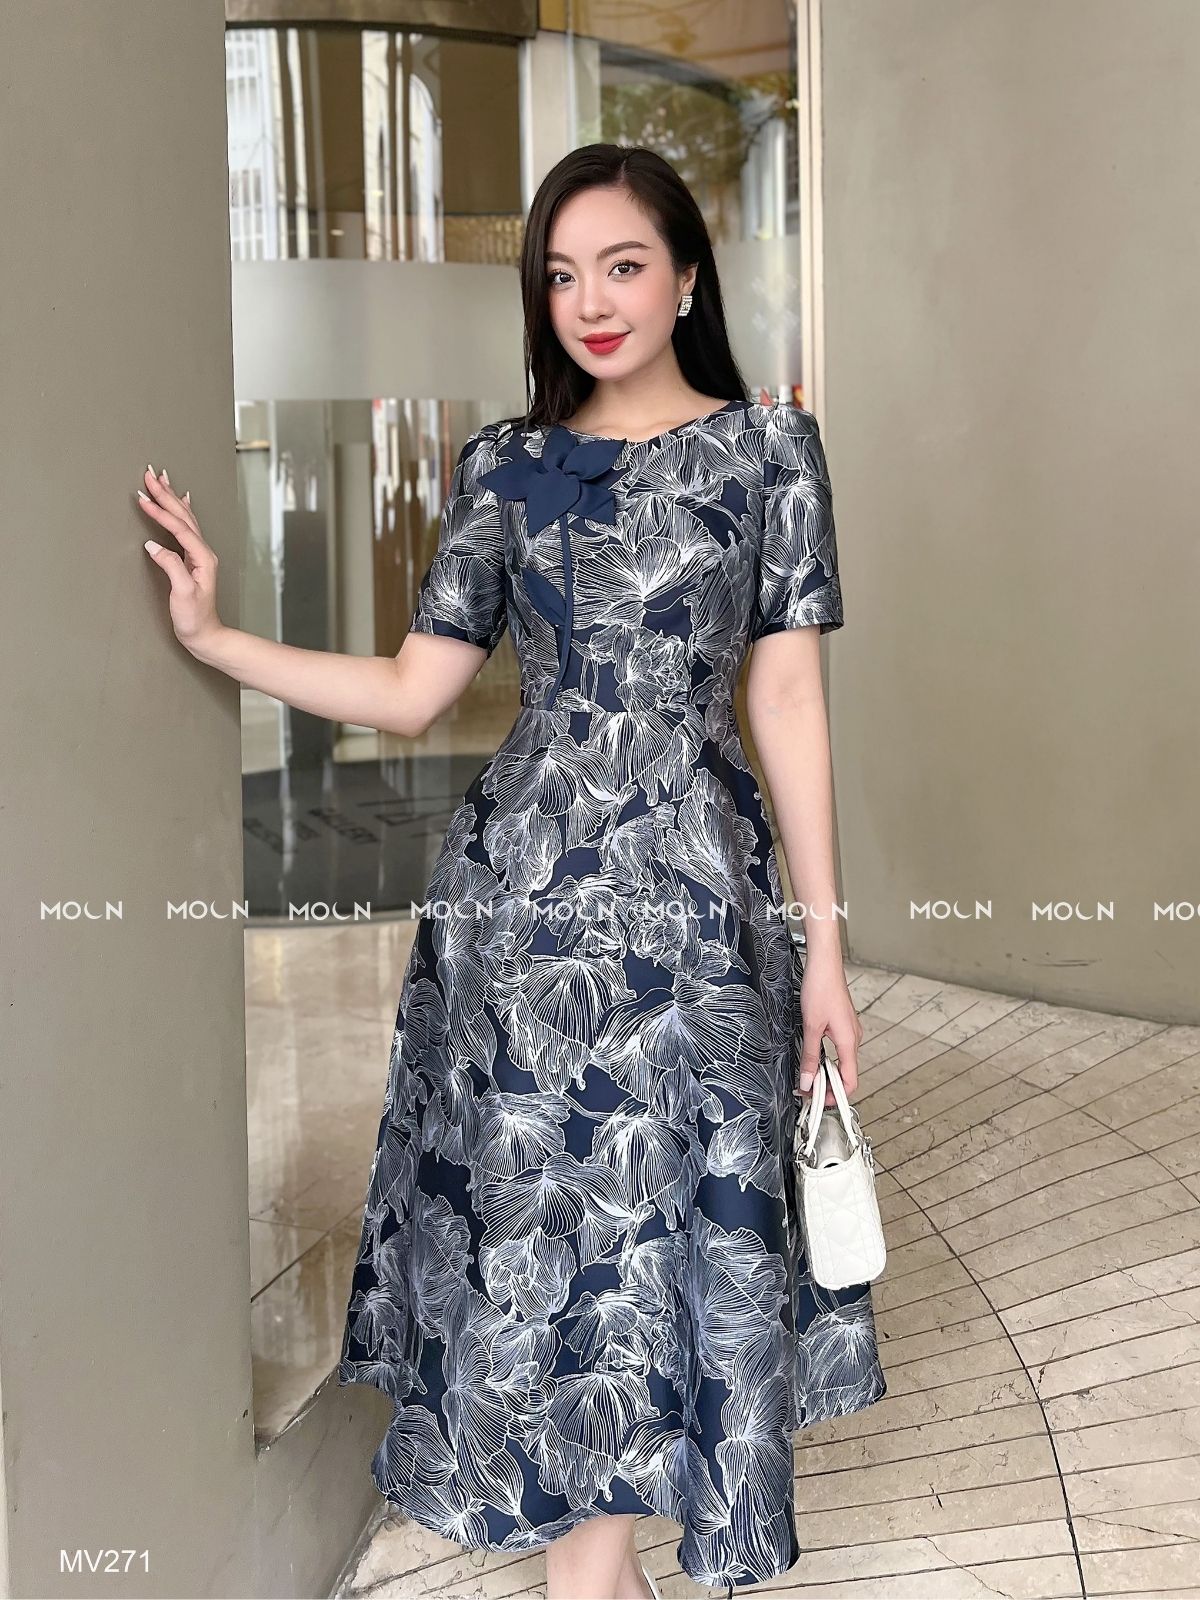 Mới) Mã K5503 Giá 800K: Váy Đầm Liền Thân Dáng Dài Nữ Xienac Dài Quá Gối  Hàng Mùa Hè Họa Tiết Hoa Thời Trang Nữ Chất Liệu Vải Voan G02 Sản Phẩm